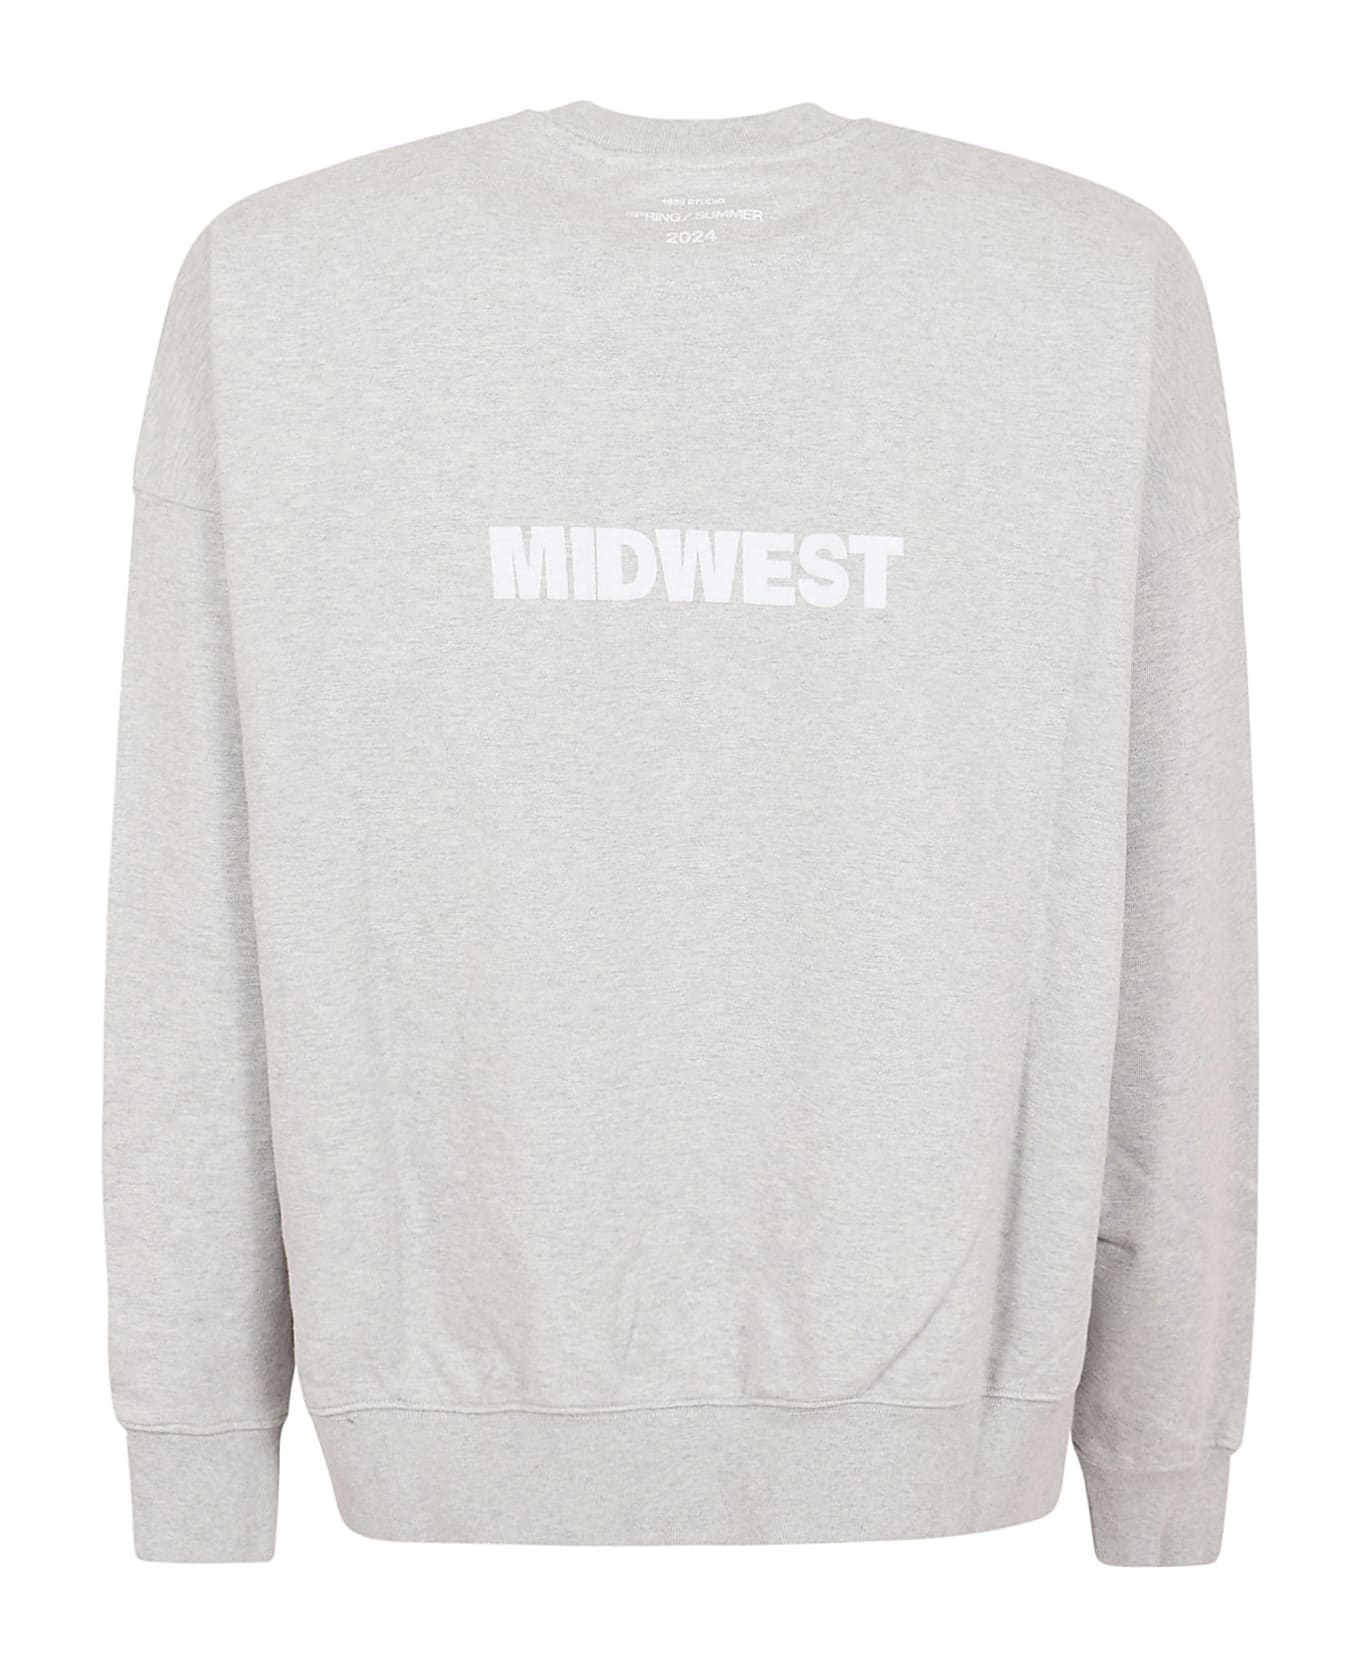 1989 Studio Midwest Relaxed Sweatshirt - Oatmeal Grey